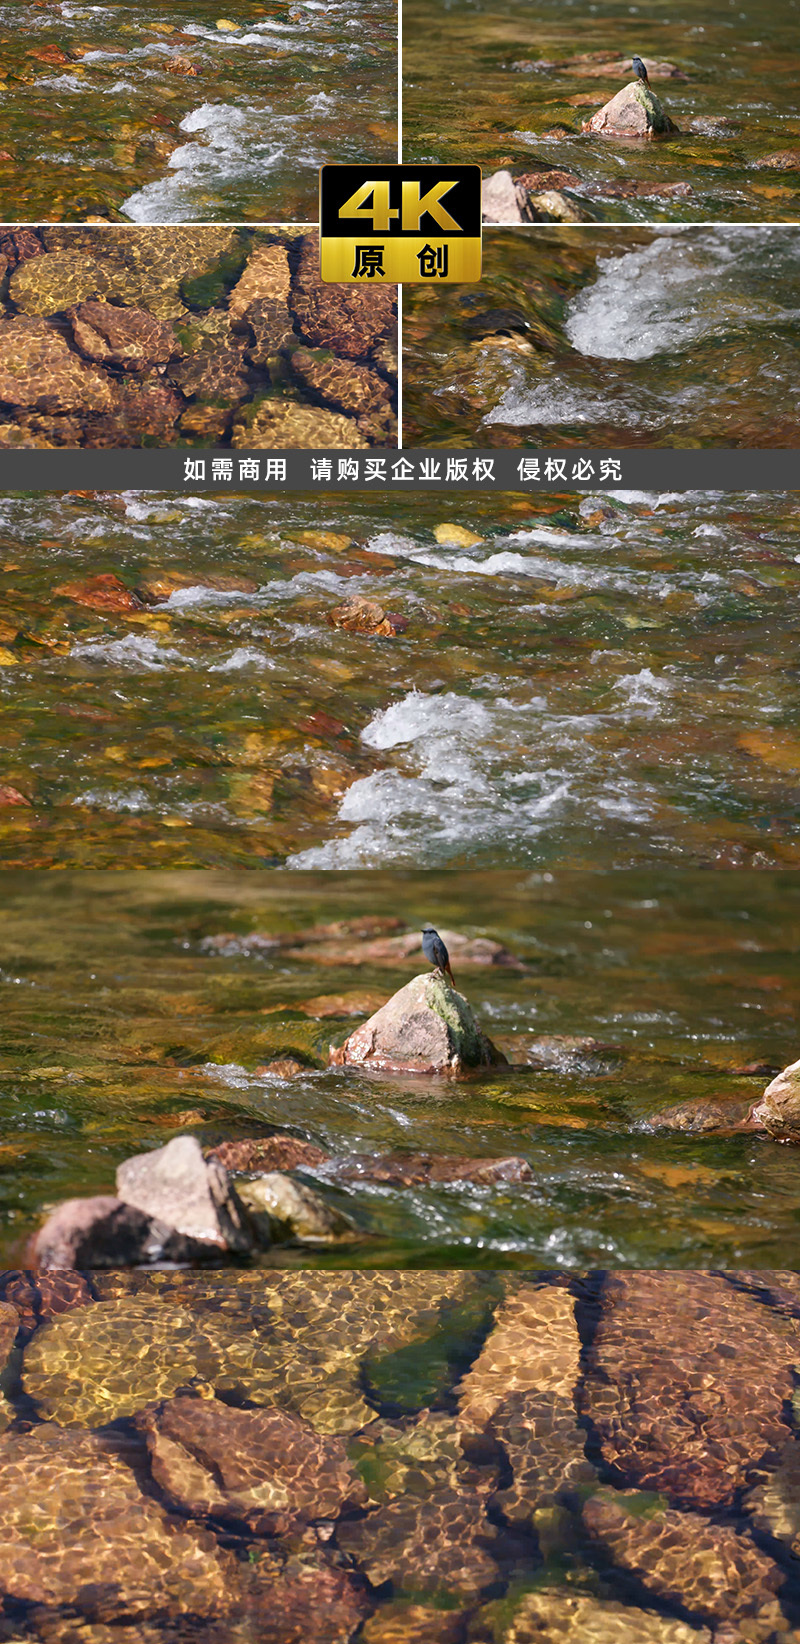 4K 清澈见底的溪流 小鸟休憩 自然景观